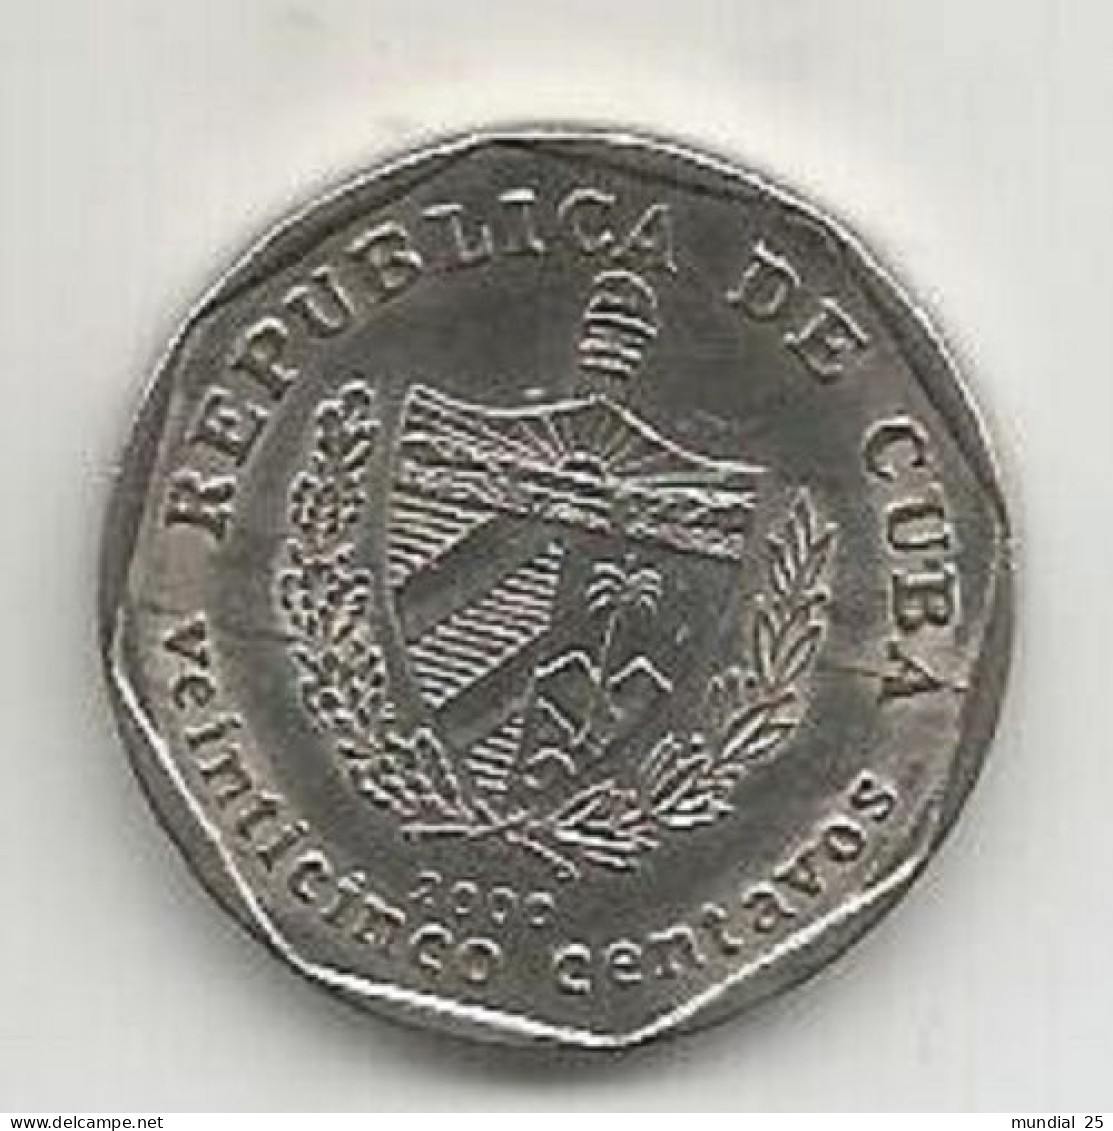 CUBA 25 CENTAVOS 2000 - CONVERTIBLES - Kuba